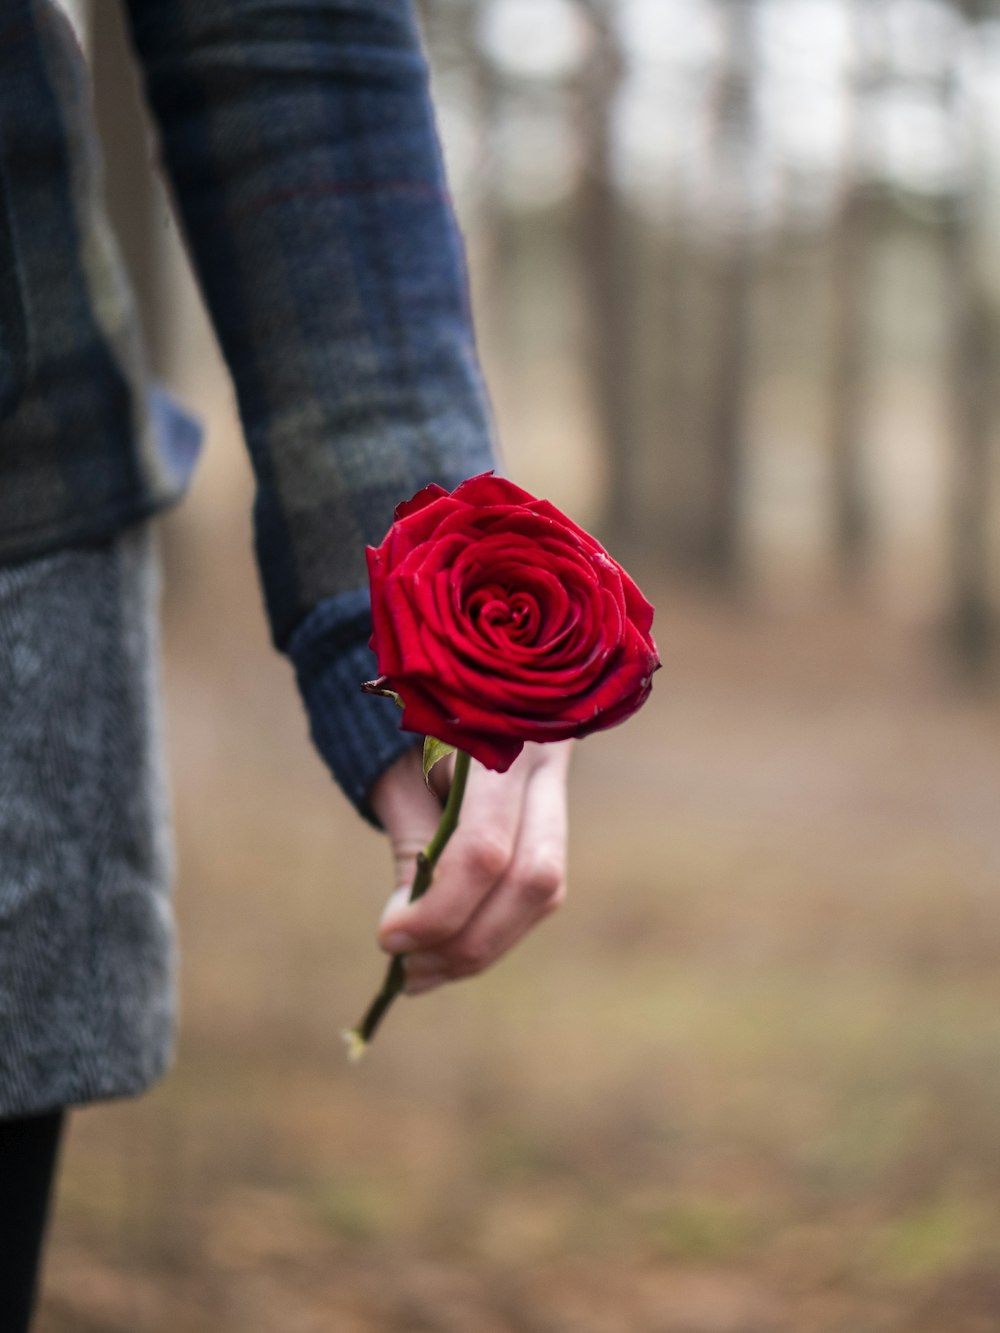 Persona che tiene il fiore della rosa rossa